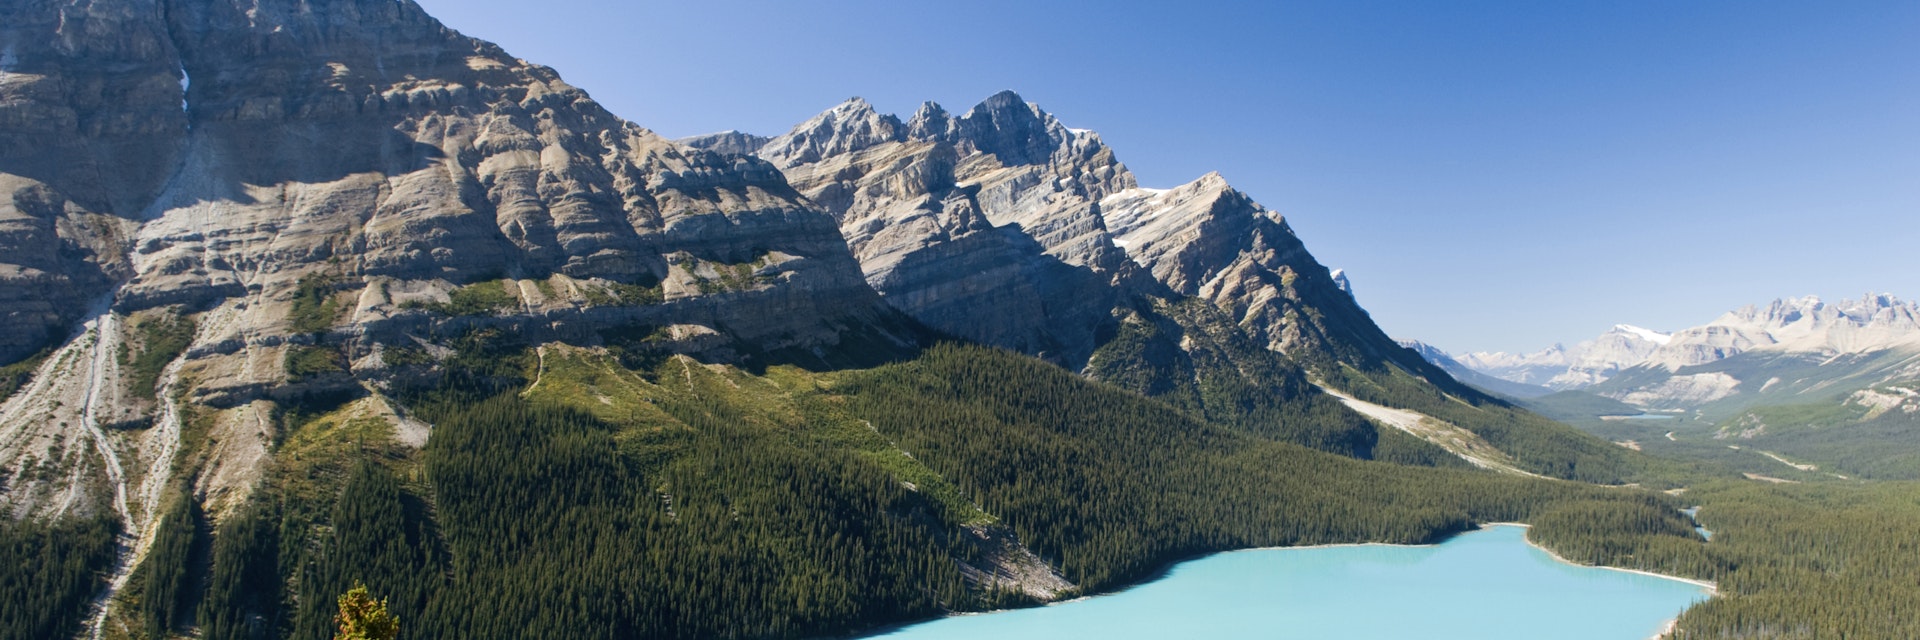 Peyto Lake, Banff National Park, Alberta, Canada.